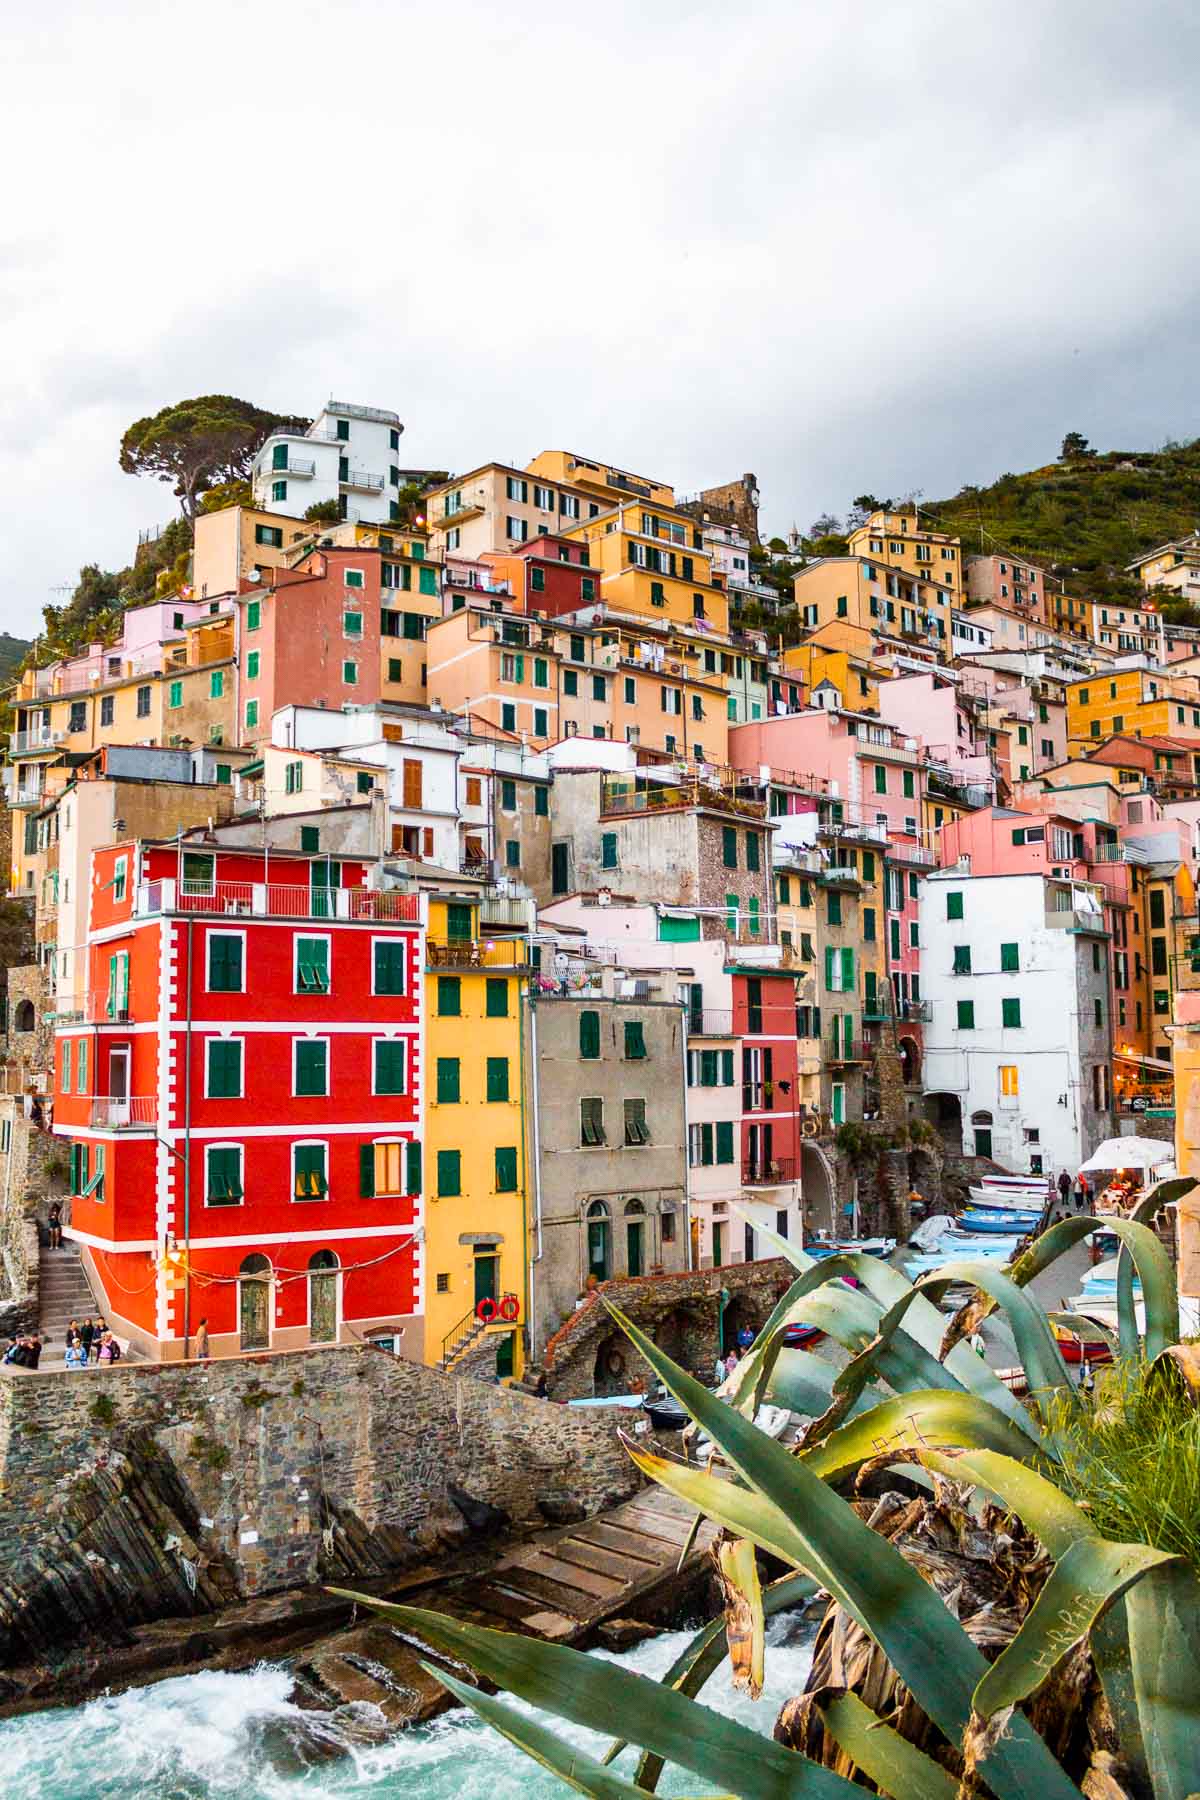 Colorful houses in Riomaggiore, Cinque Terre, Italy